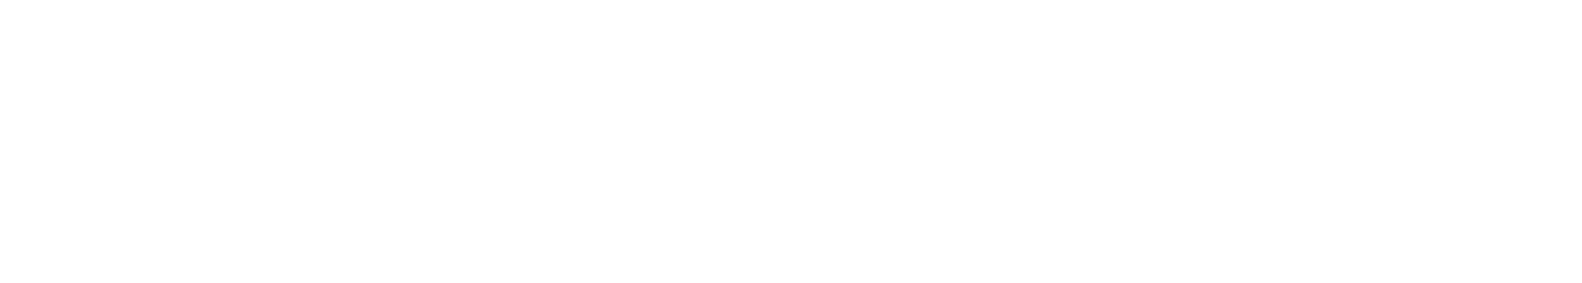 Schroders logo large for dark backgrounds (transparent PNG)